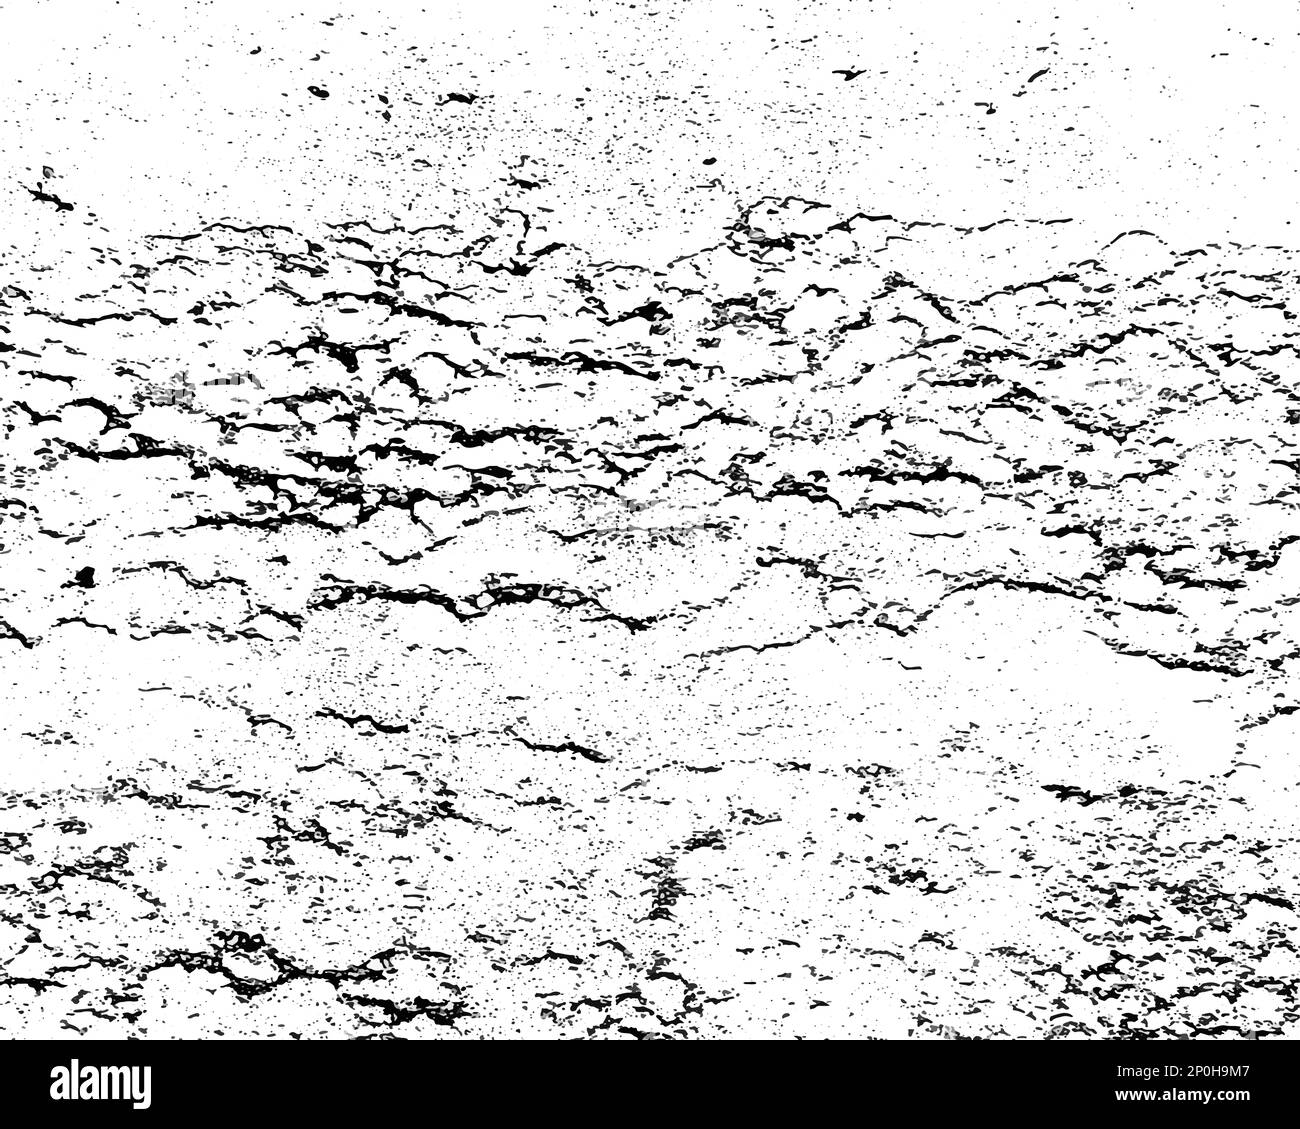 Abstrait grunge noir et blanc aspect vieilli texture vieux béton image vectorielle de mur pour votre conception. Illustration de Vecteur